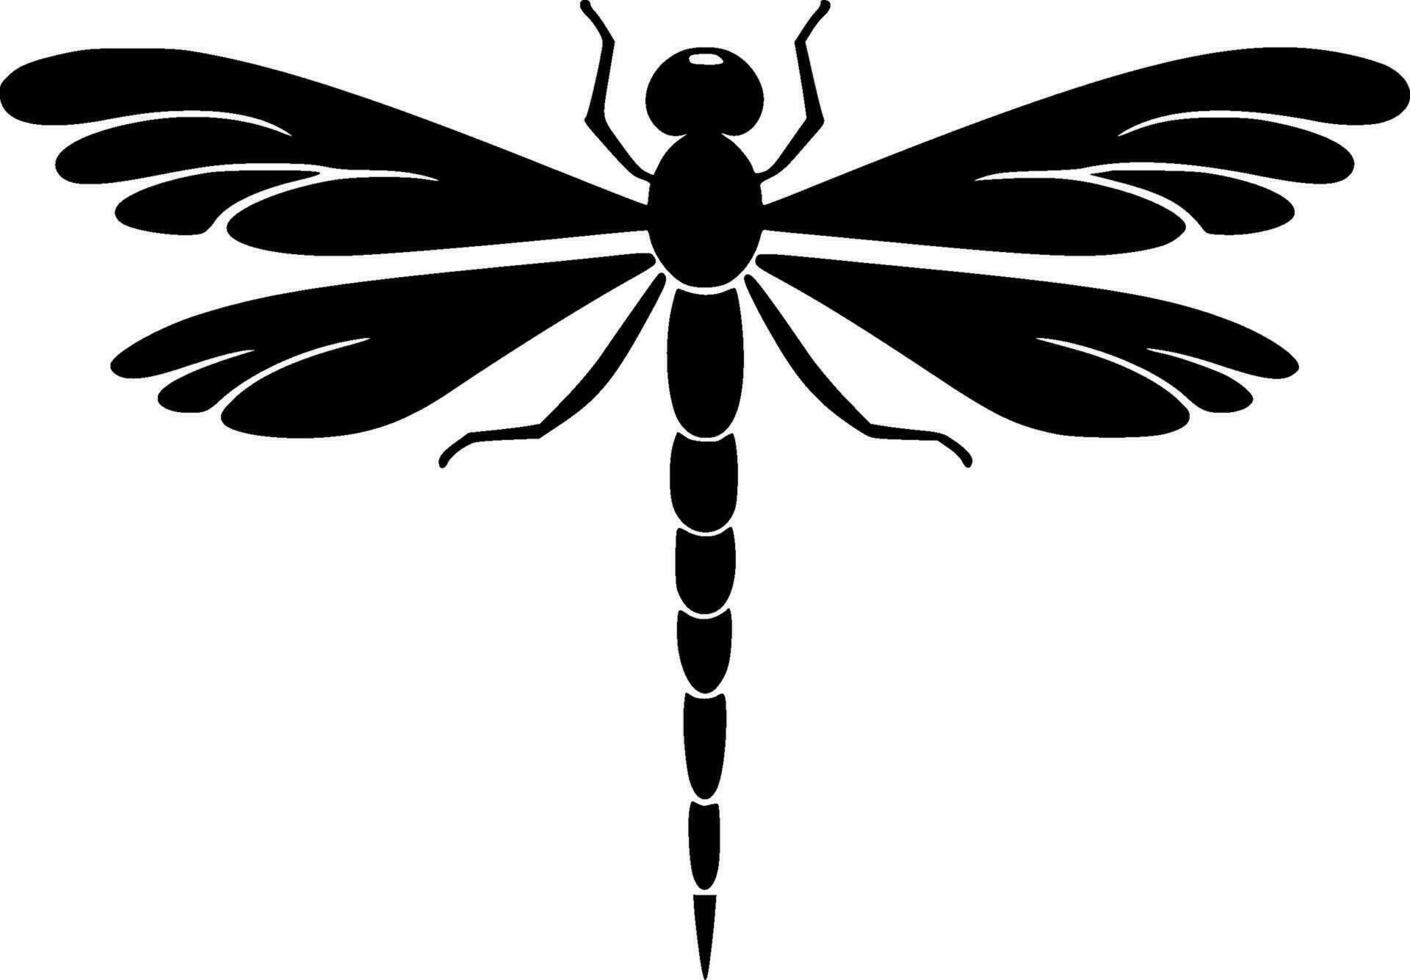 libélula - negro y blanco aislado icono - vector ilustración